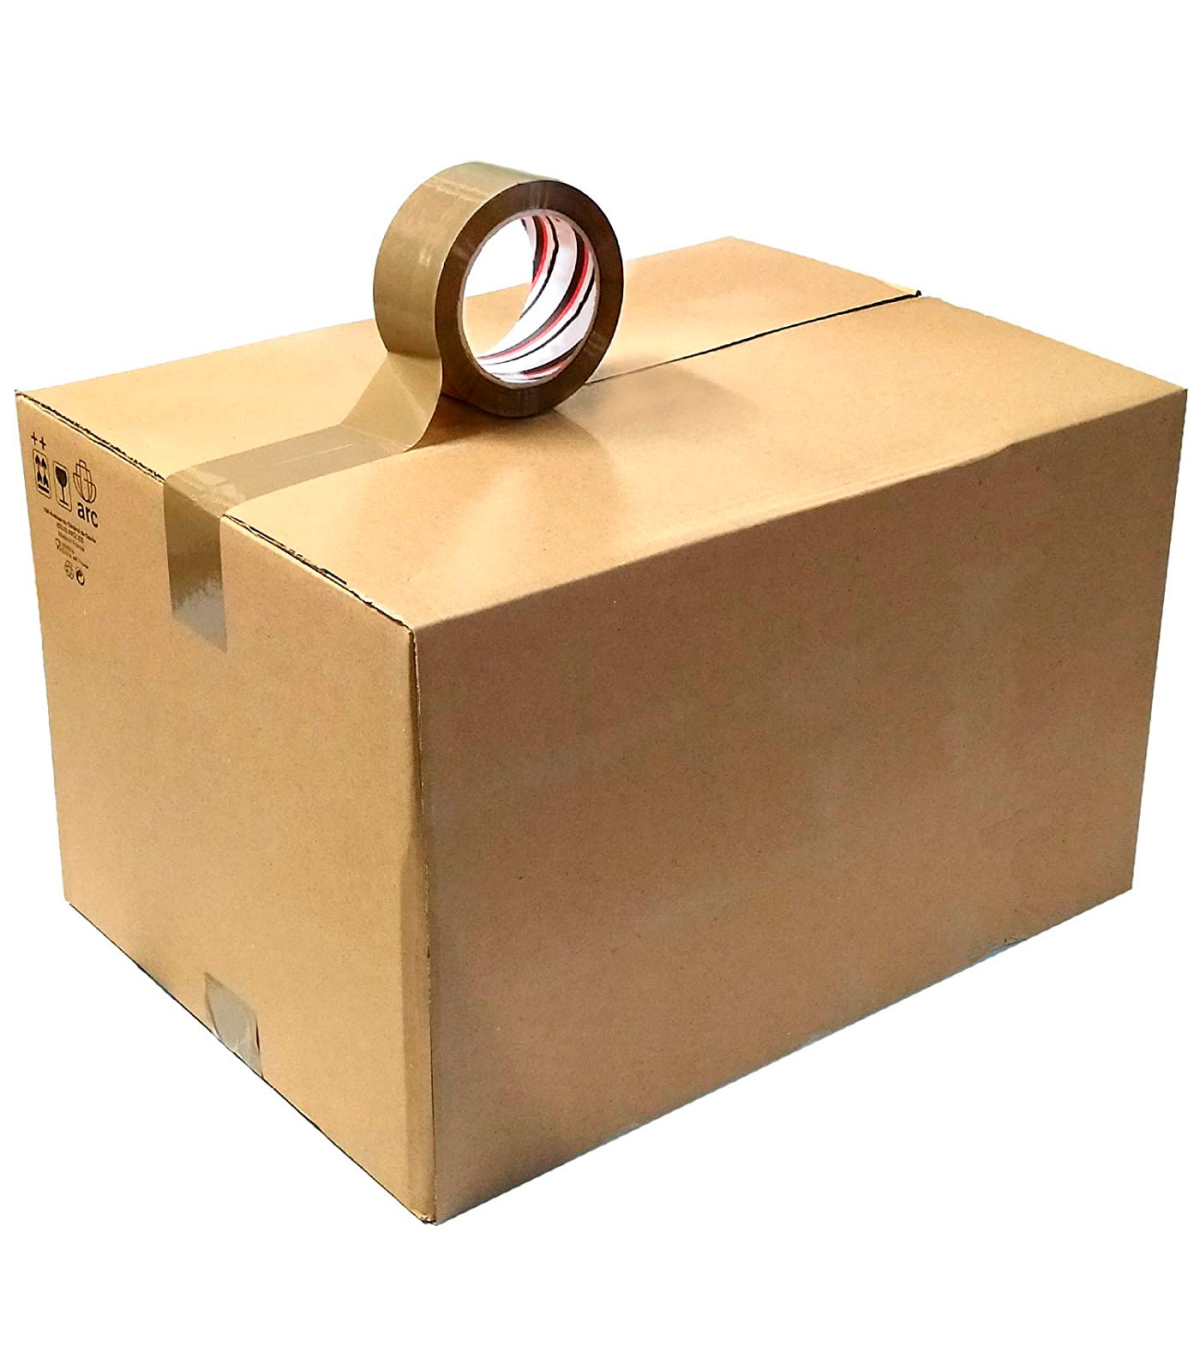 Tradineur - adhesiva de embalar, precinto multiusos para embalaje, sellar, empaquetar, cerrar cajas, resistente al desgarr